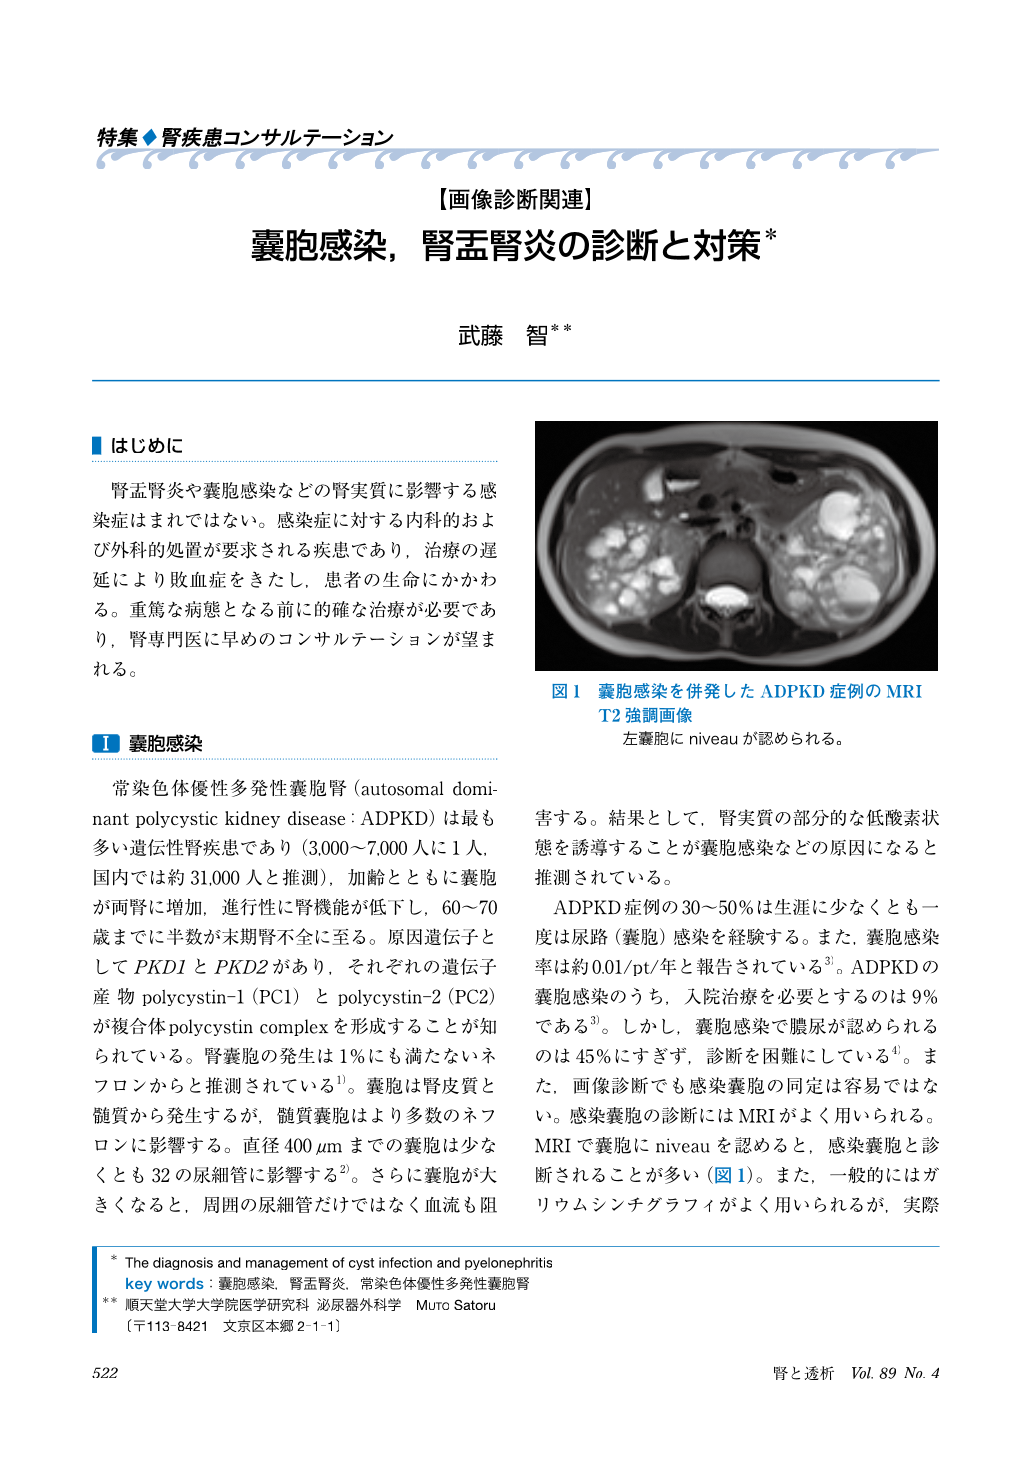 画像診断関連 嚢胞感染、腎盂腎炎の診断と対策 (腎と透析 89巻4号 